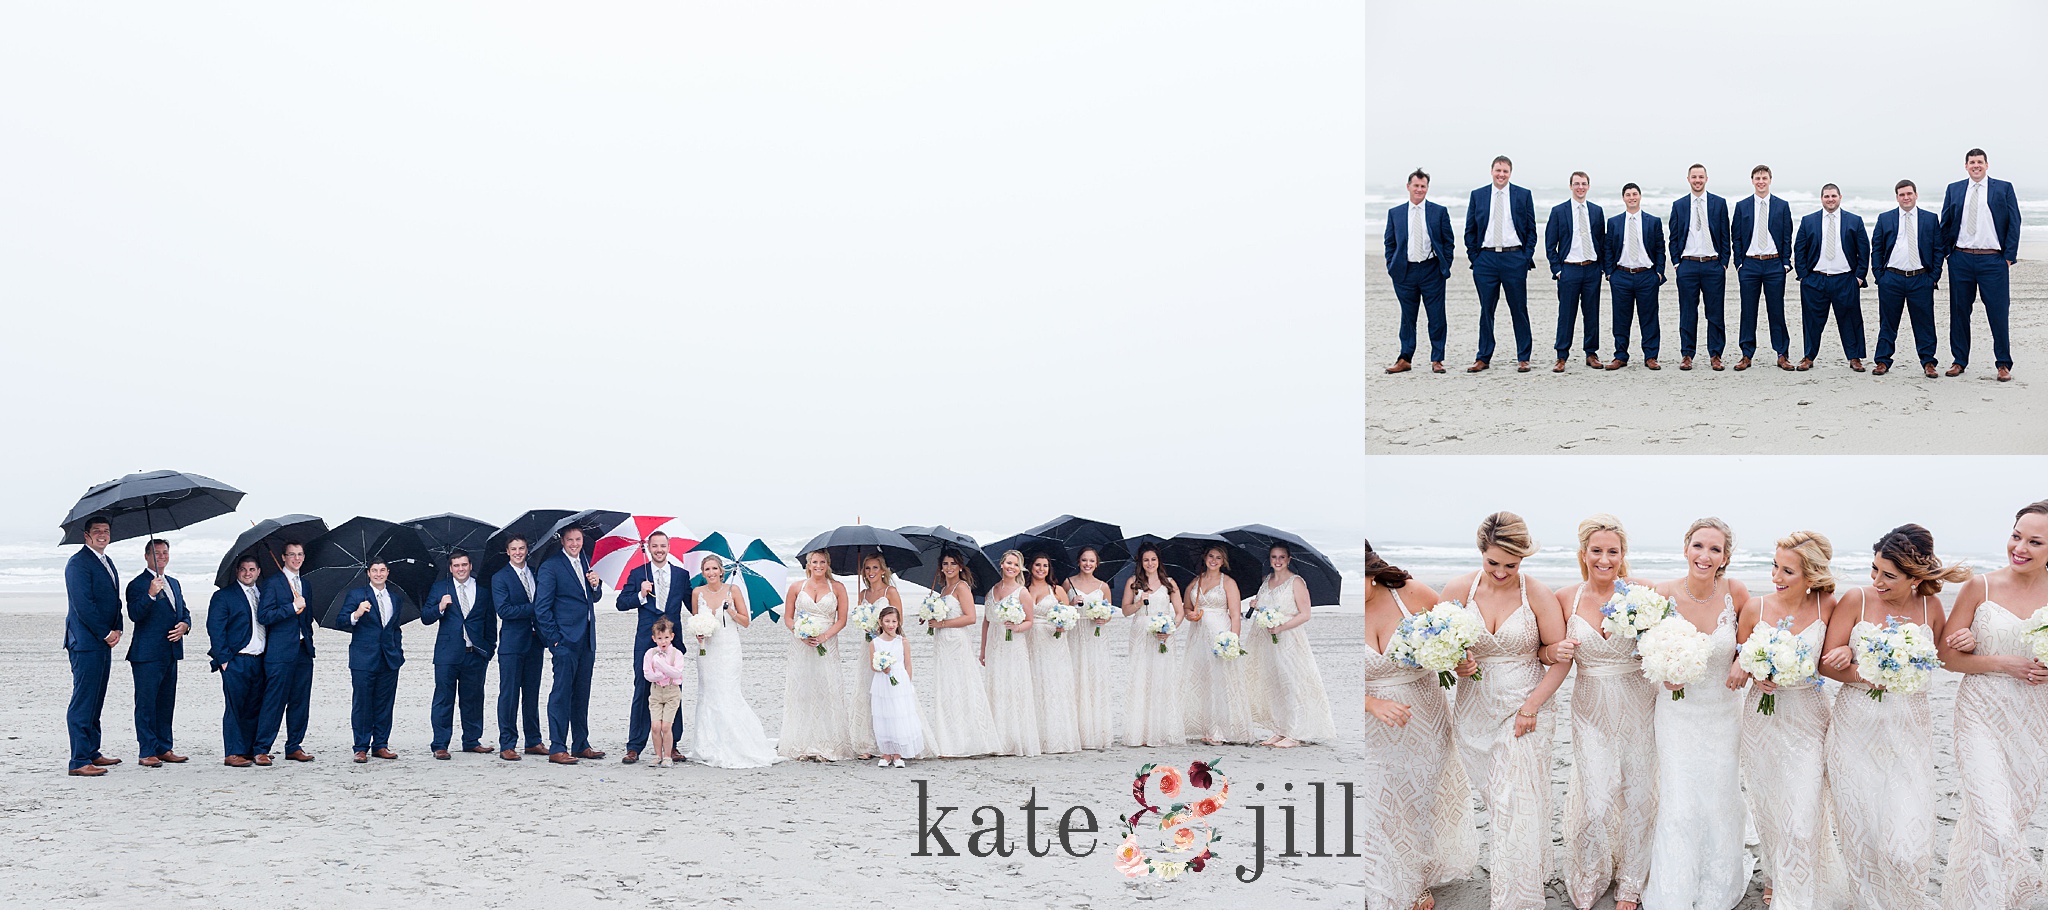 umbrella wedding party photos